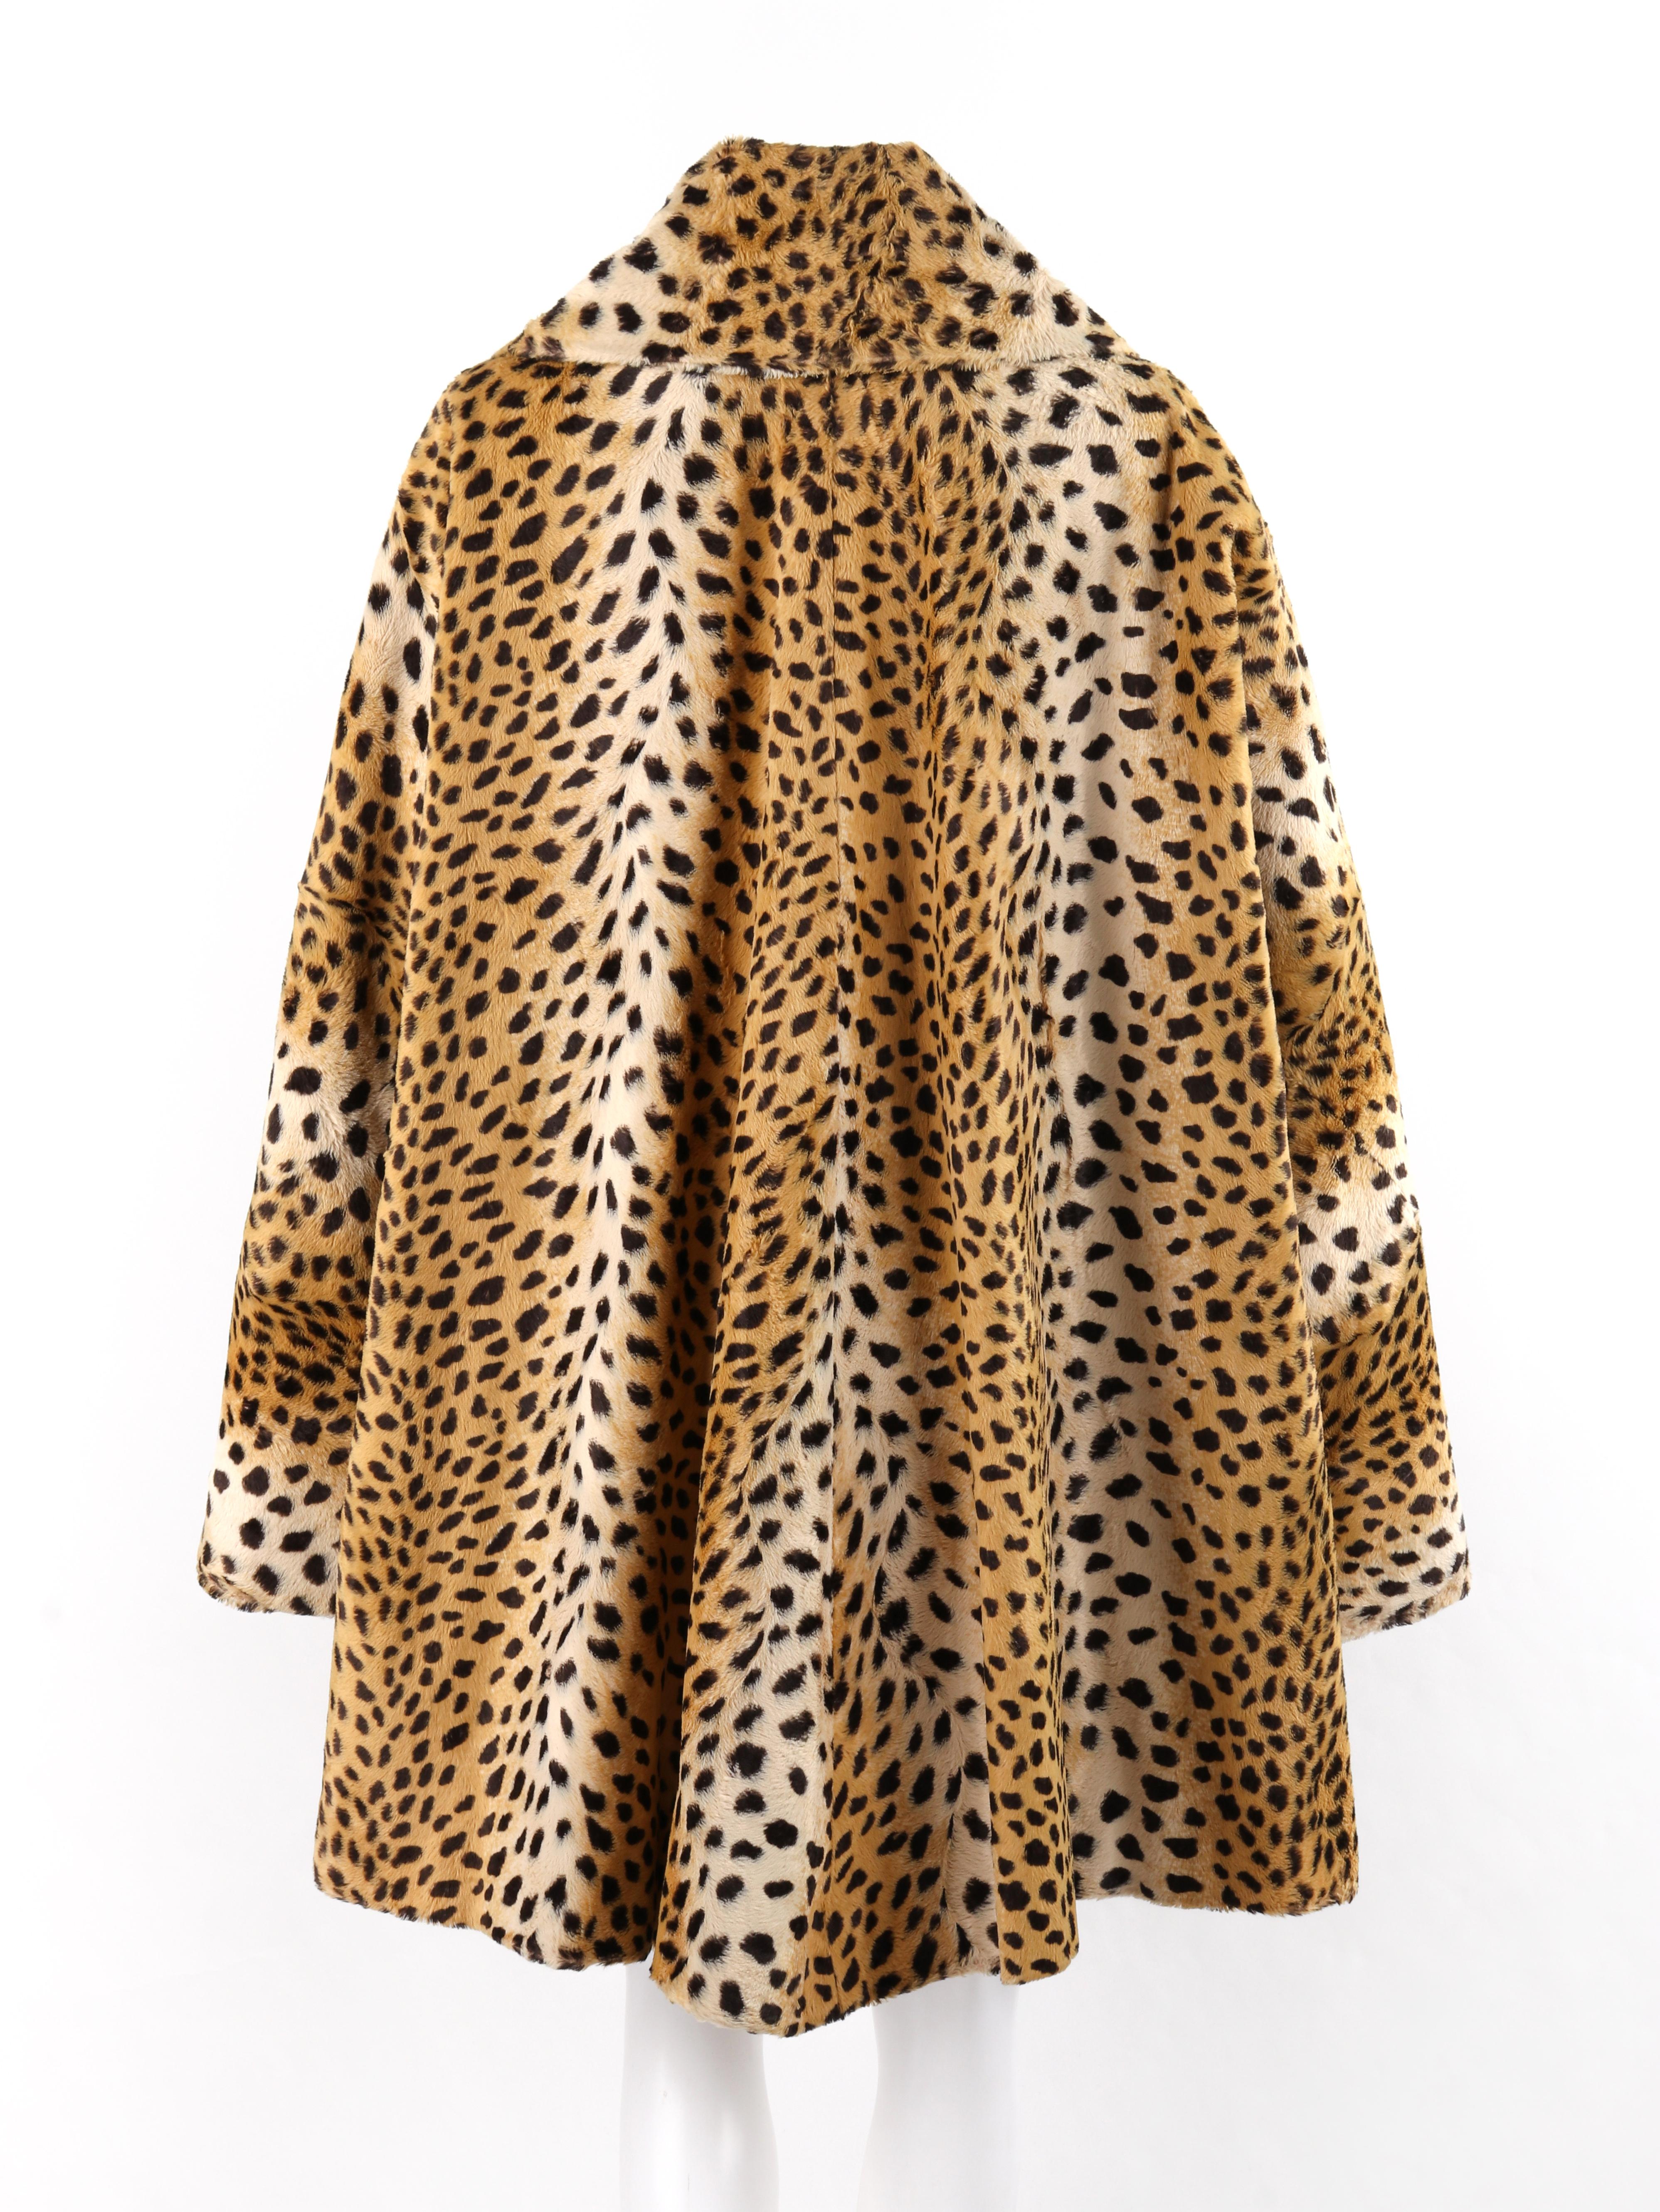 GIVENCHY COUTURE A/W 1997 ALEXANDER McQUEEN Cheetah Print Faux Fur ...